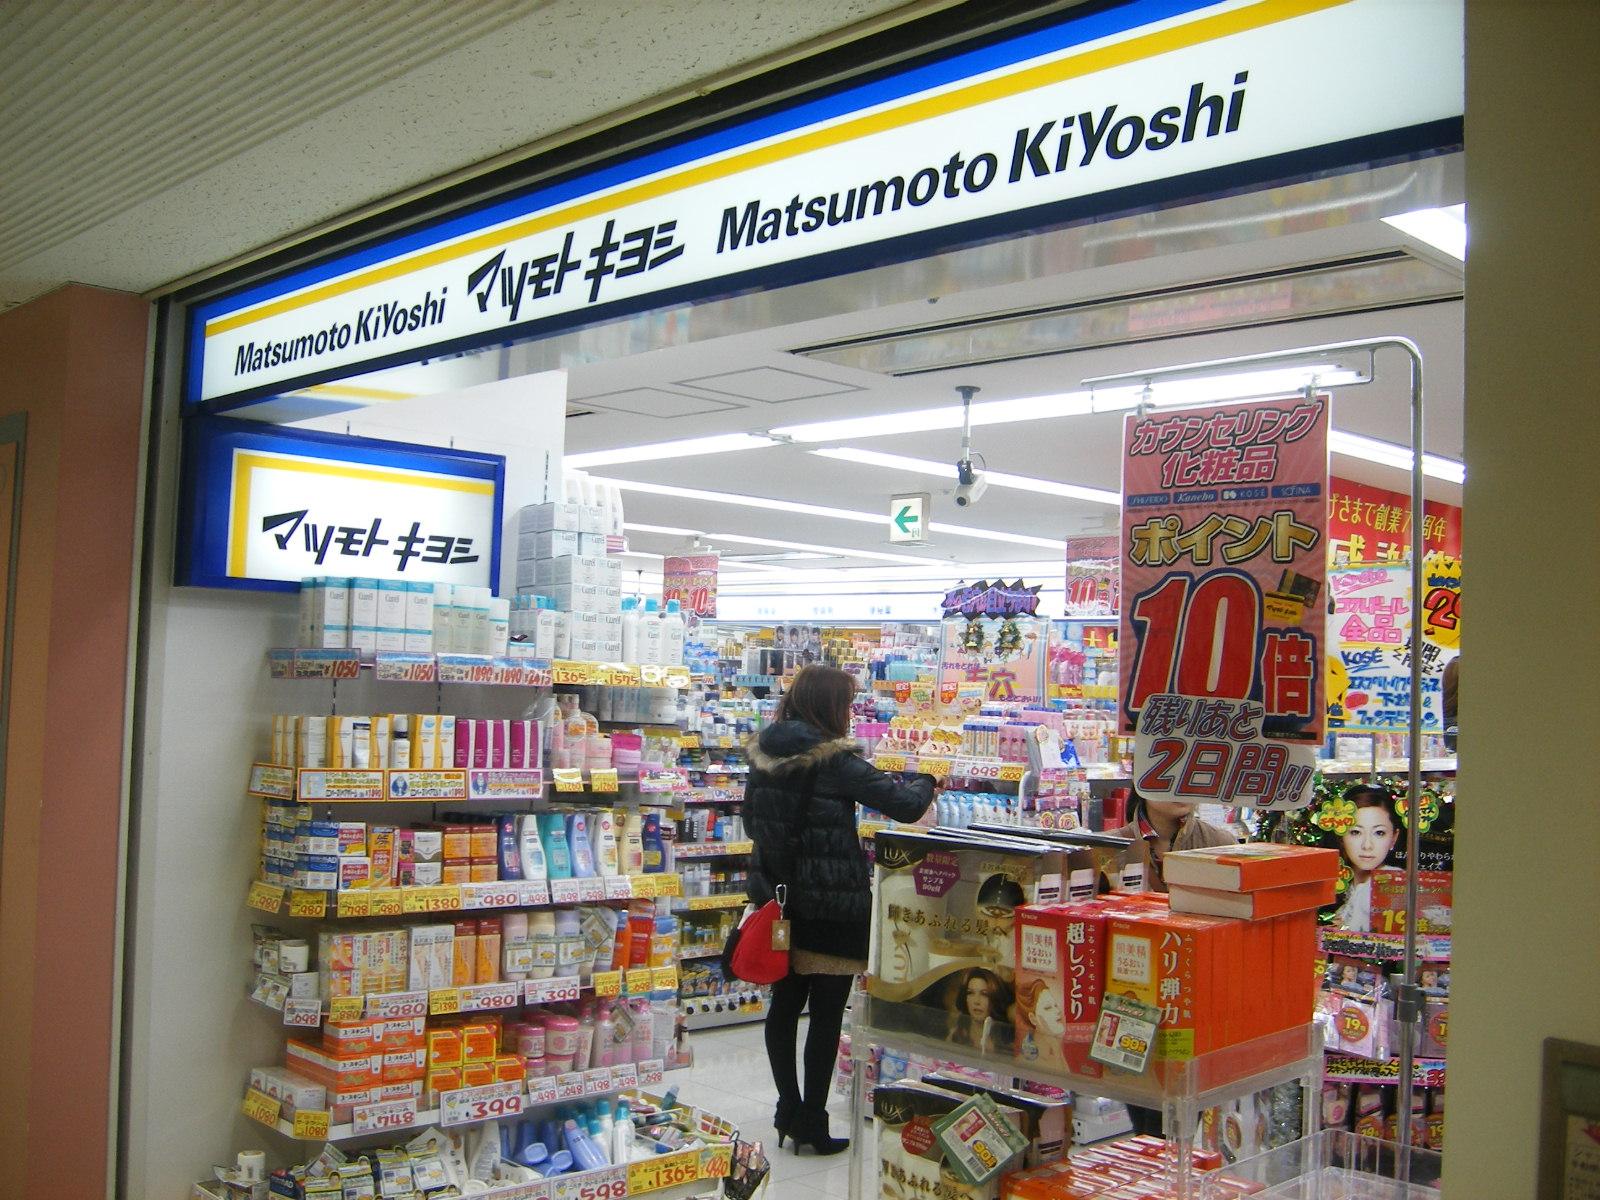 Dorakkusutoa. Matsumotokiyoshi 284m until (drugstore)